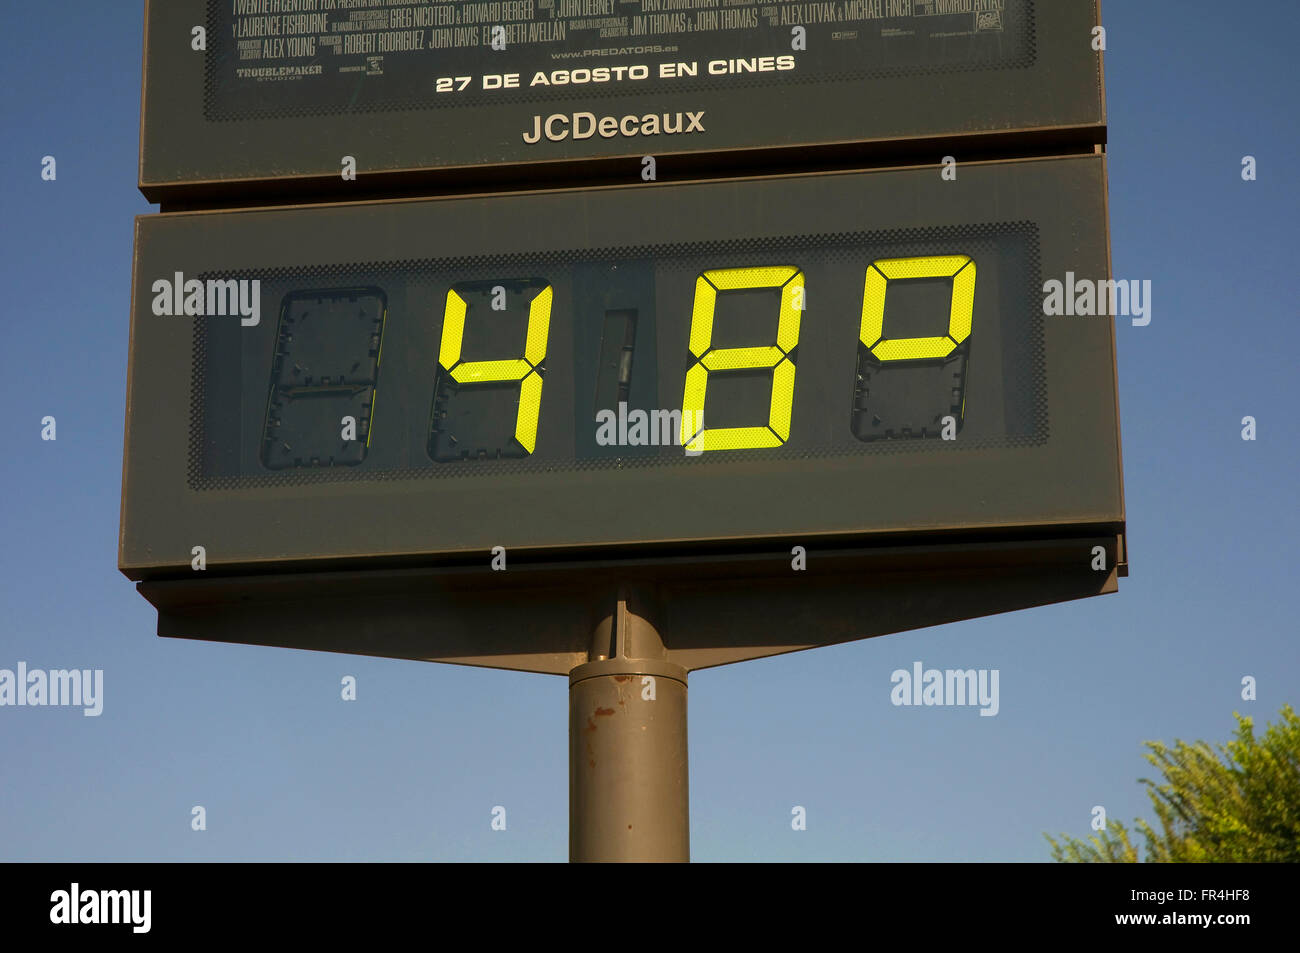 Termometro urbana, temperature estreme, segnapunti digitale, Siviglia, regione dell'Andalusia, Spagna, Europa Foto Stock